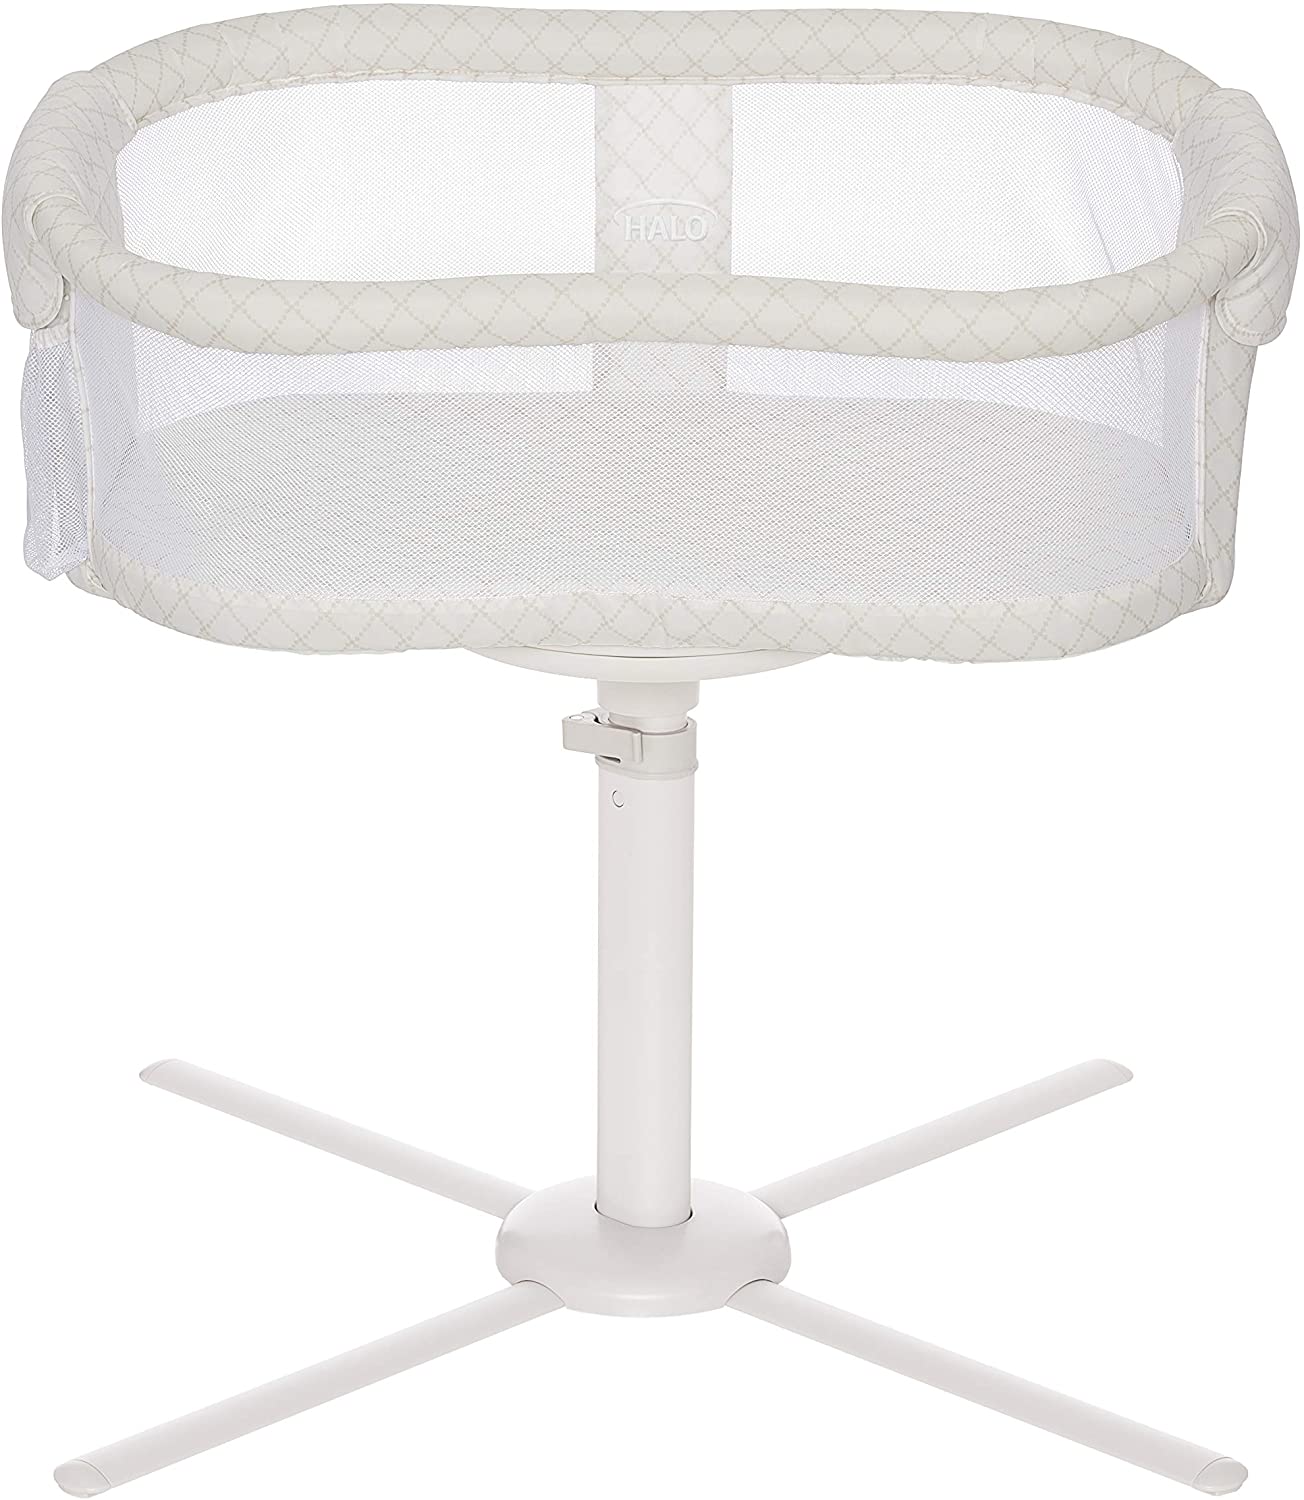 Halo bassinet mom baby gift idea 2021